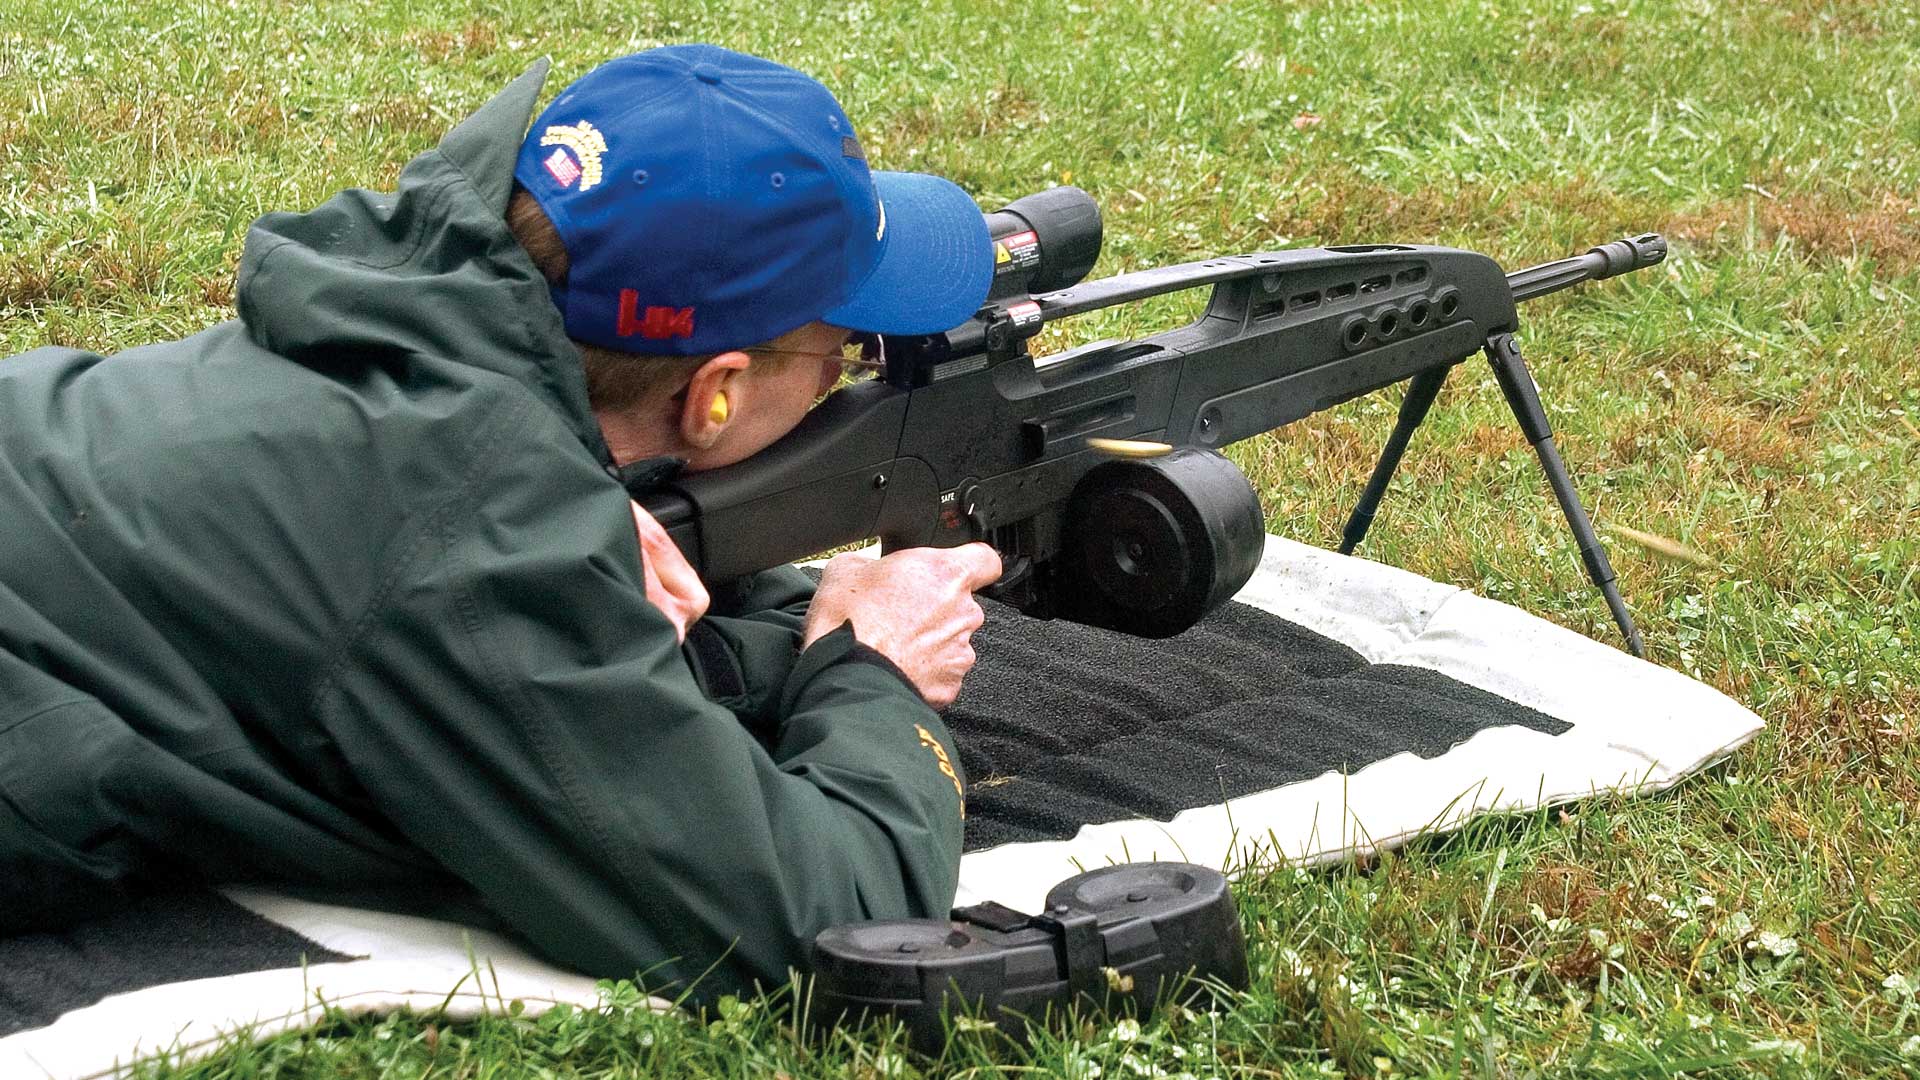 outdoors man blue hat shooting ground grass mat rifle xm8 gun